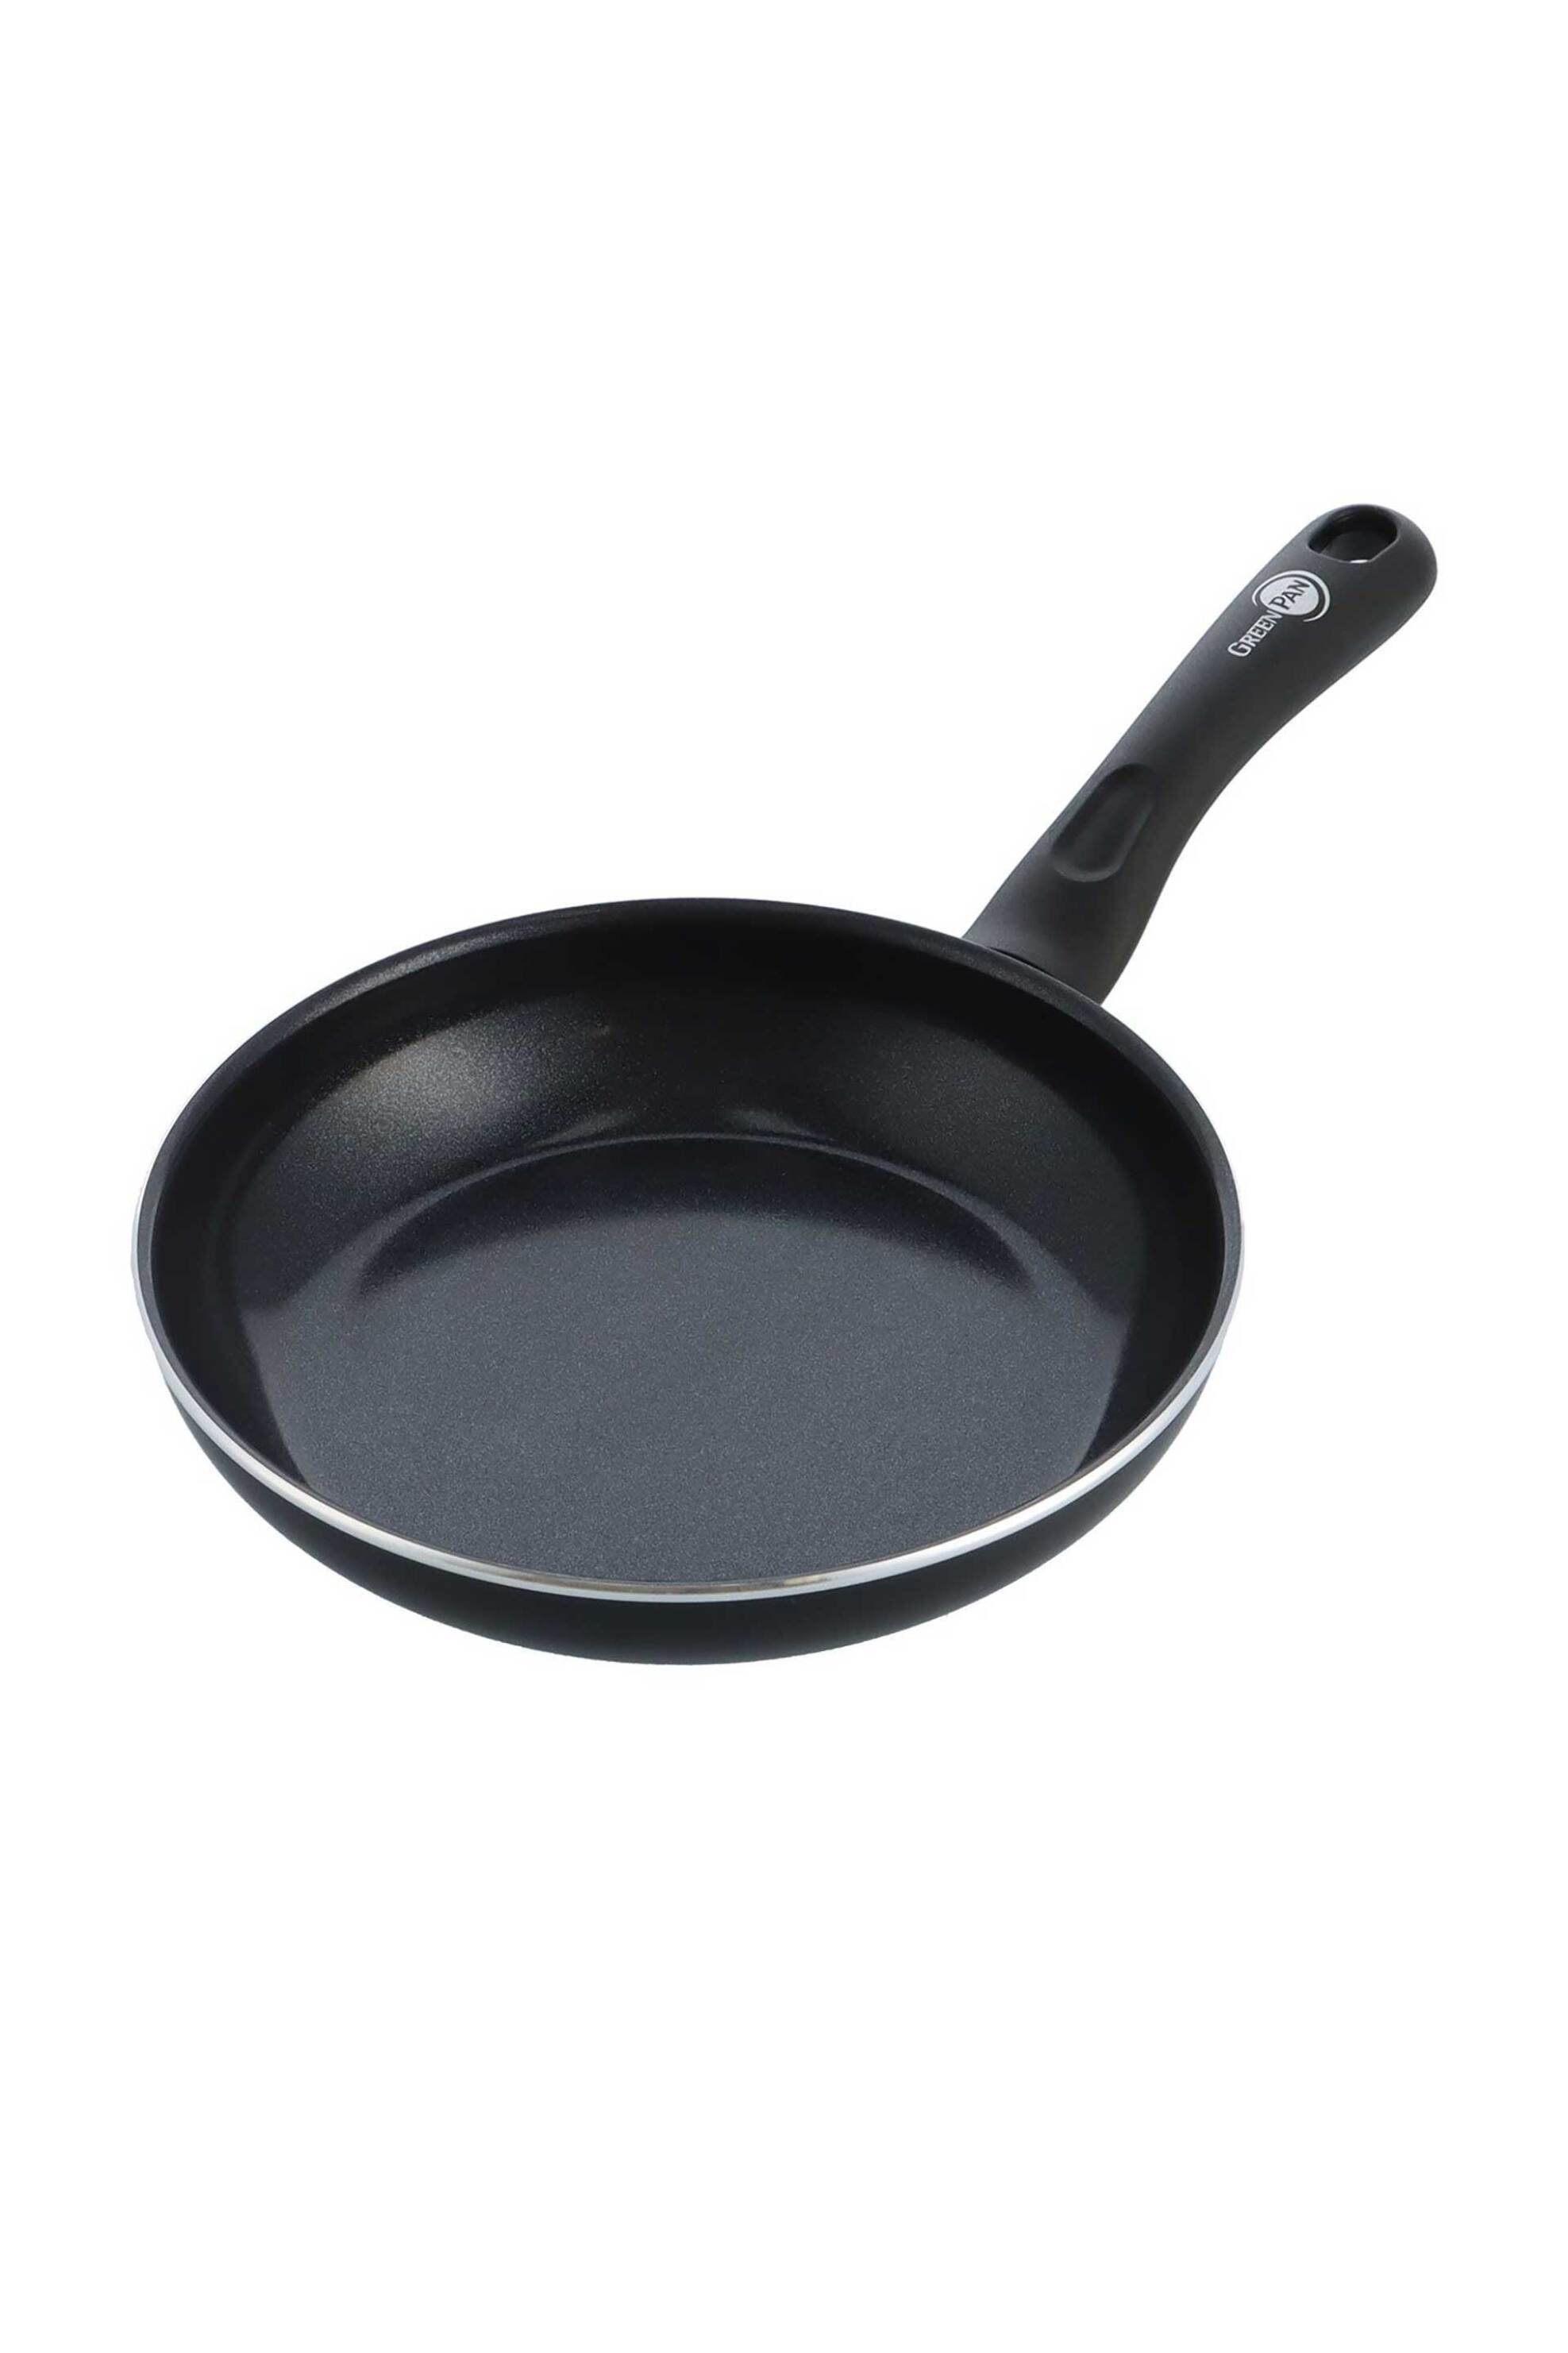 Home > ΚΟΥΖΙΝΑ > Μαγειρικά Σκεύη Green Pan κεραμικό αντικολλητικό τηγάνι 20 cm Μαύρο - CC006082-001